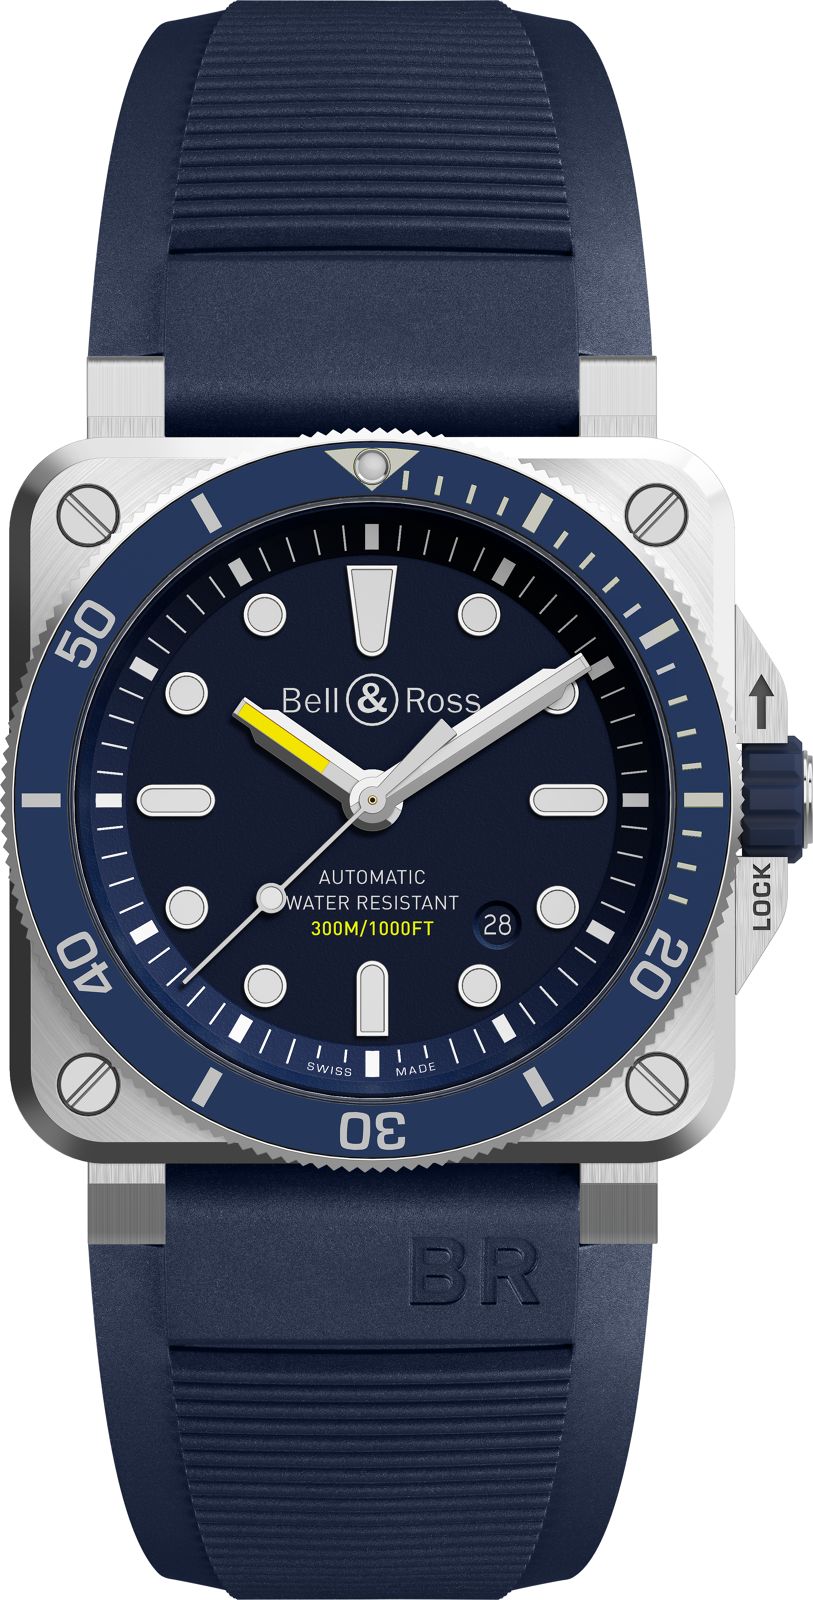 Photos - Wrist Watch Bell & Ross BR 03 92 Diver Blue BR-745 